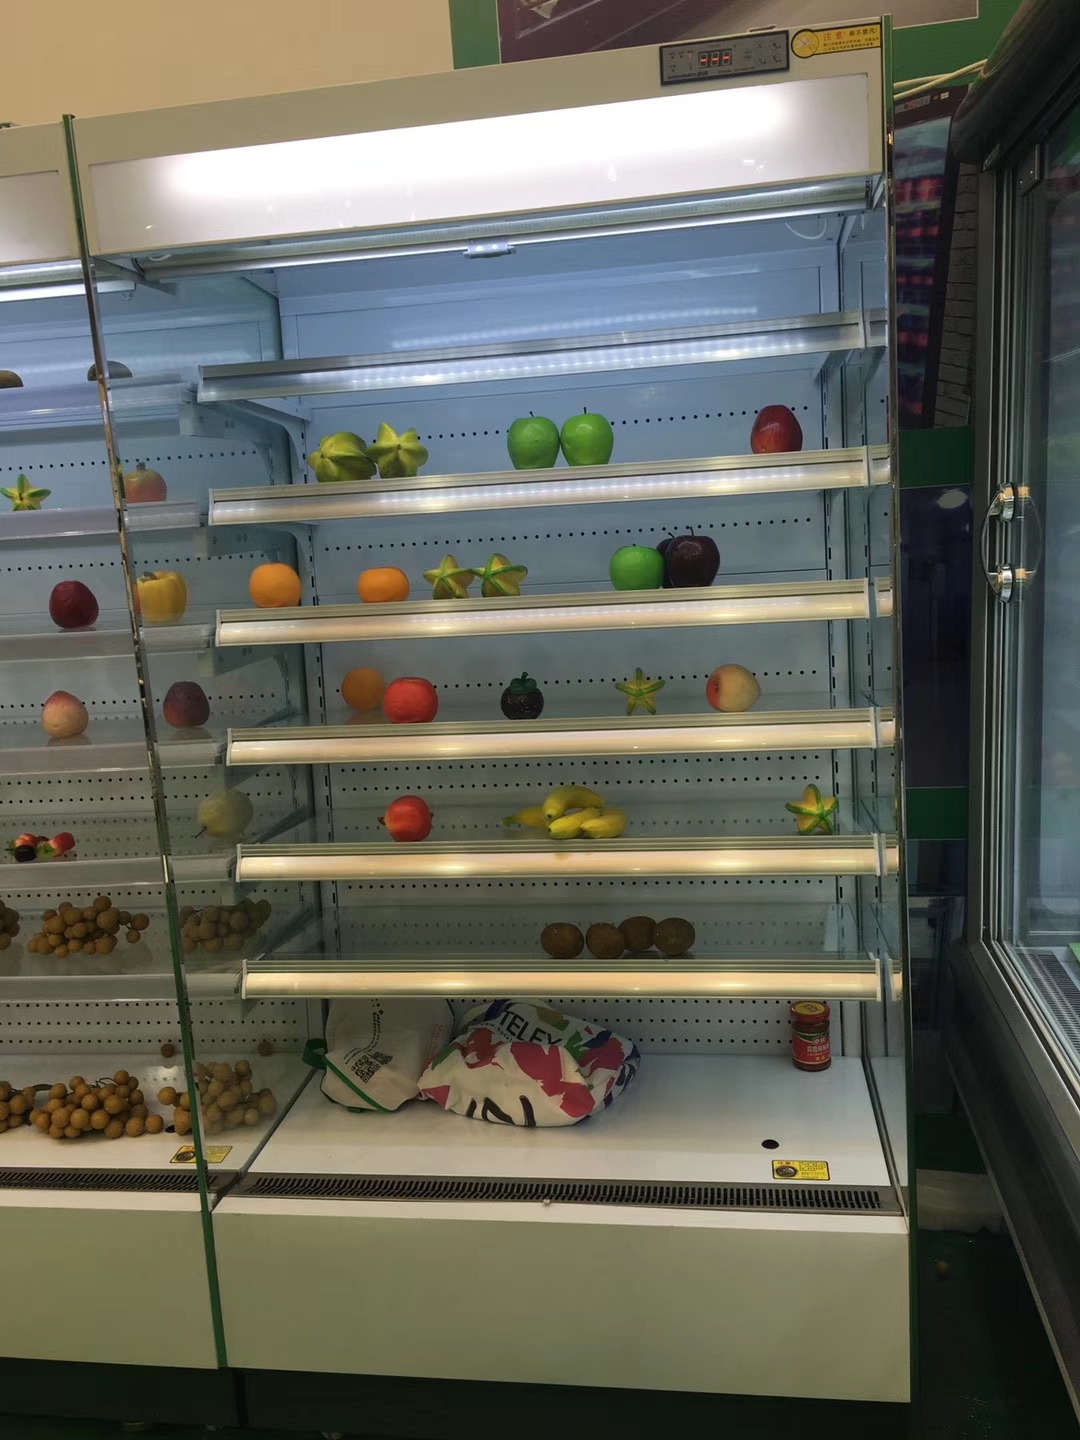 蔬菜冷藏柜 未来雪-W-FMG-12-水果保鲜柜 超市风幕柜 水果店风幕柜 商用冰箱展示柜冰柜 水果柜4